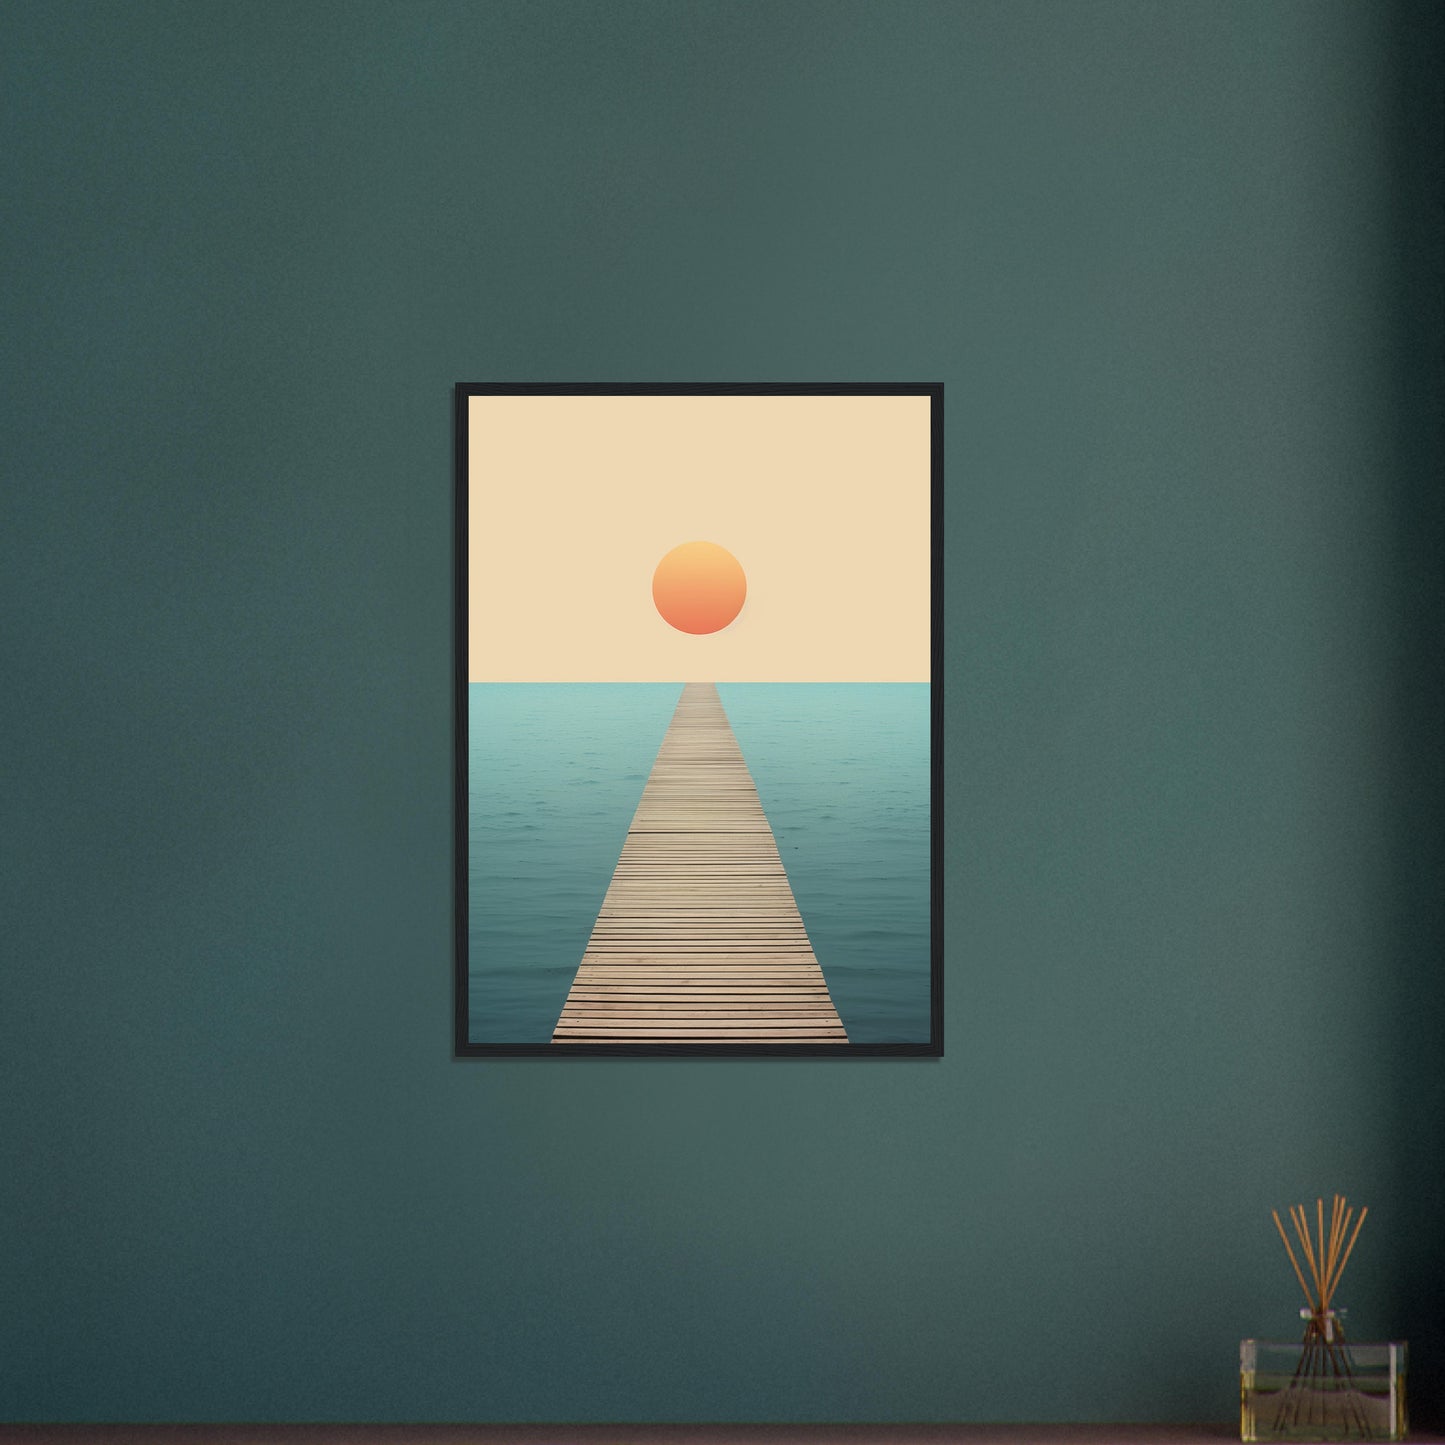 Follow The Lead - Minimalist Wall Art Print Sun Water